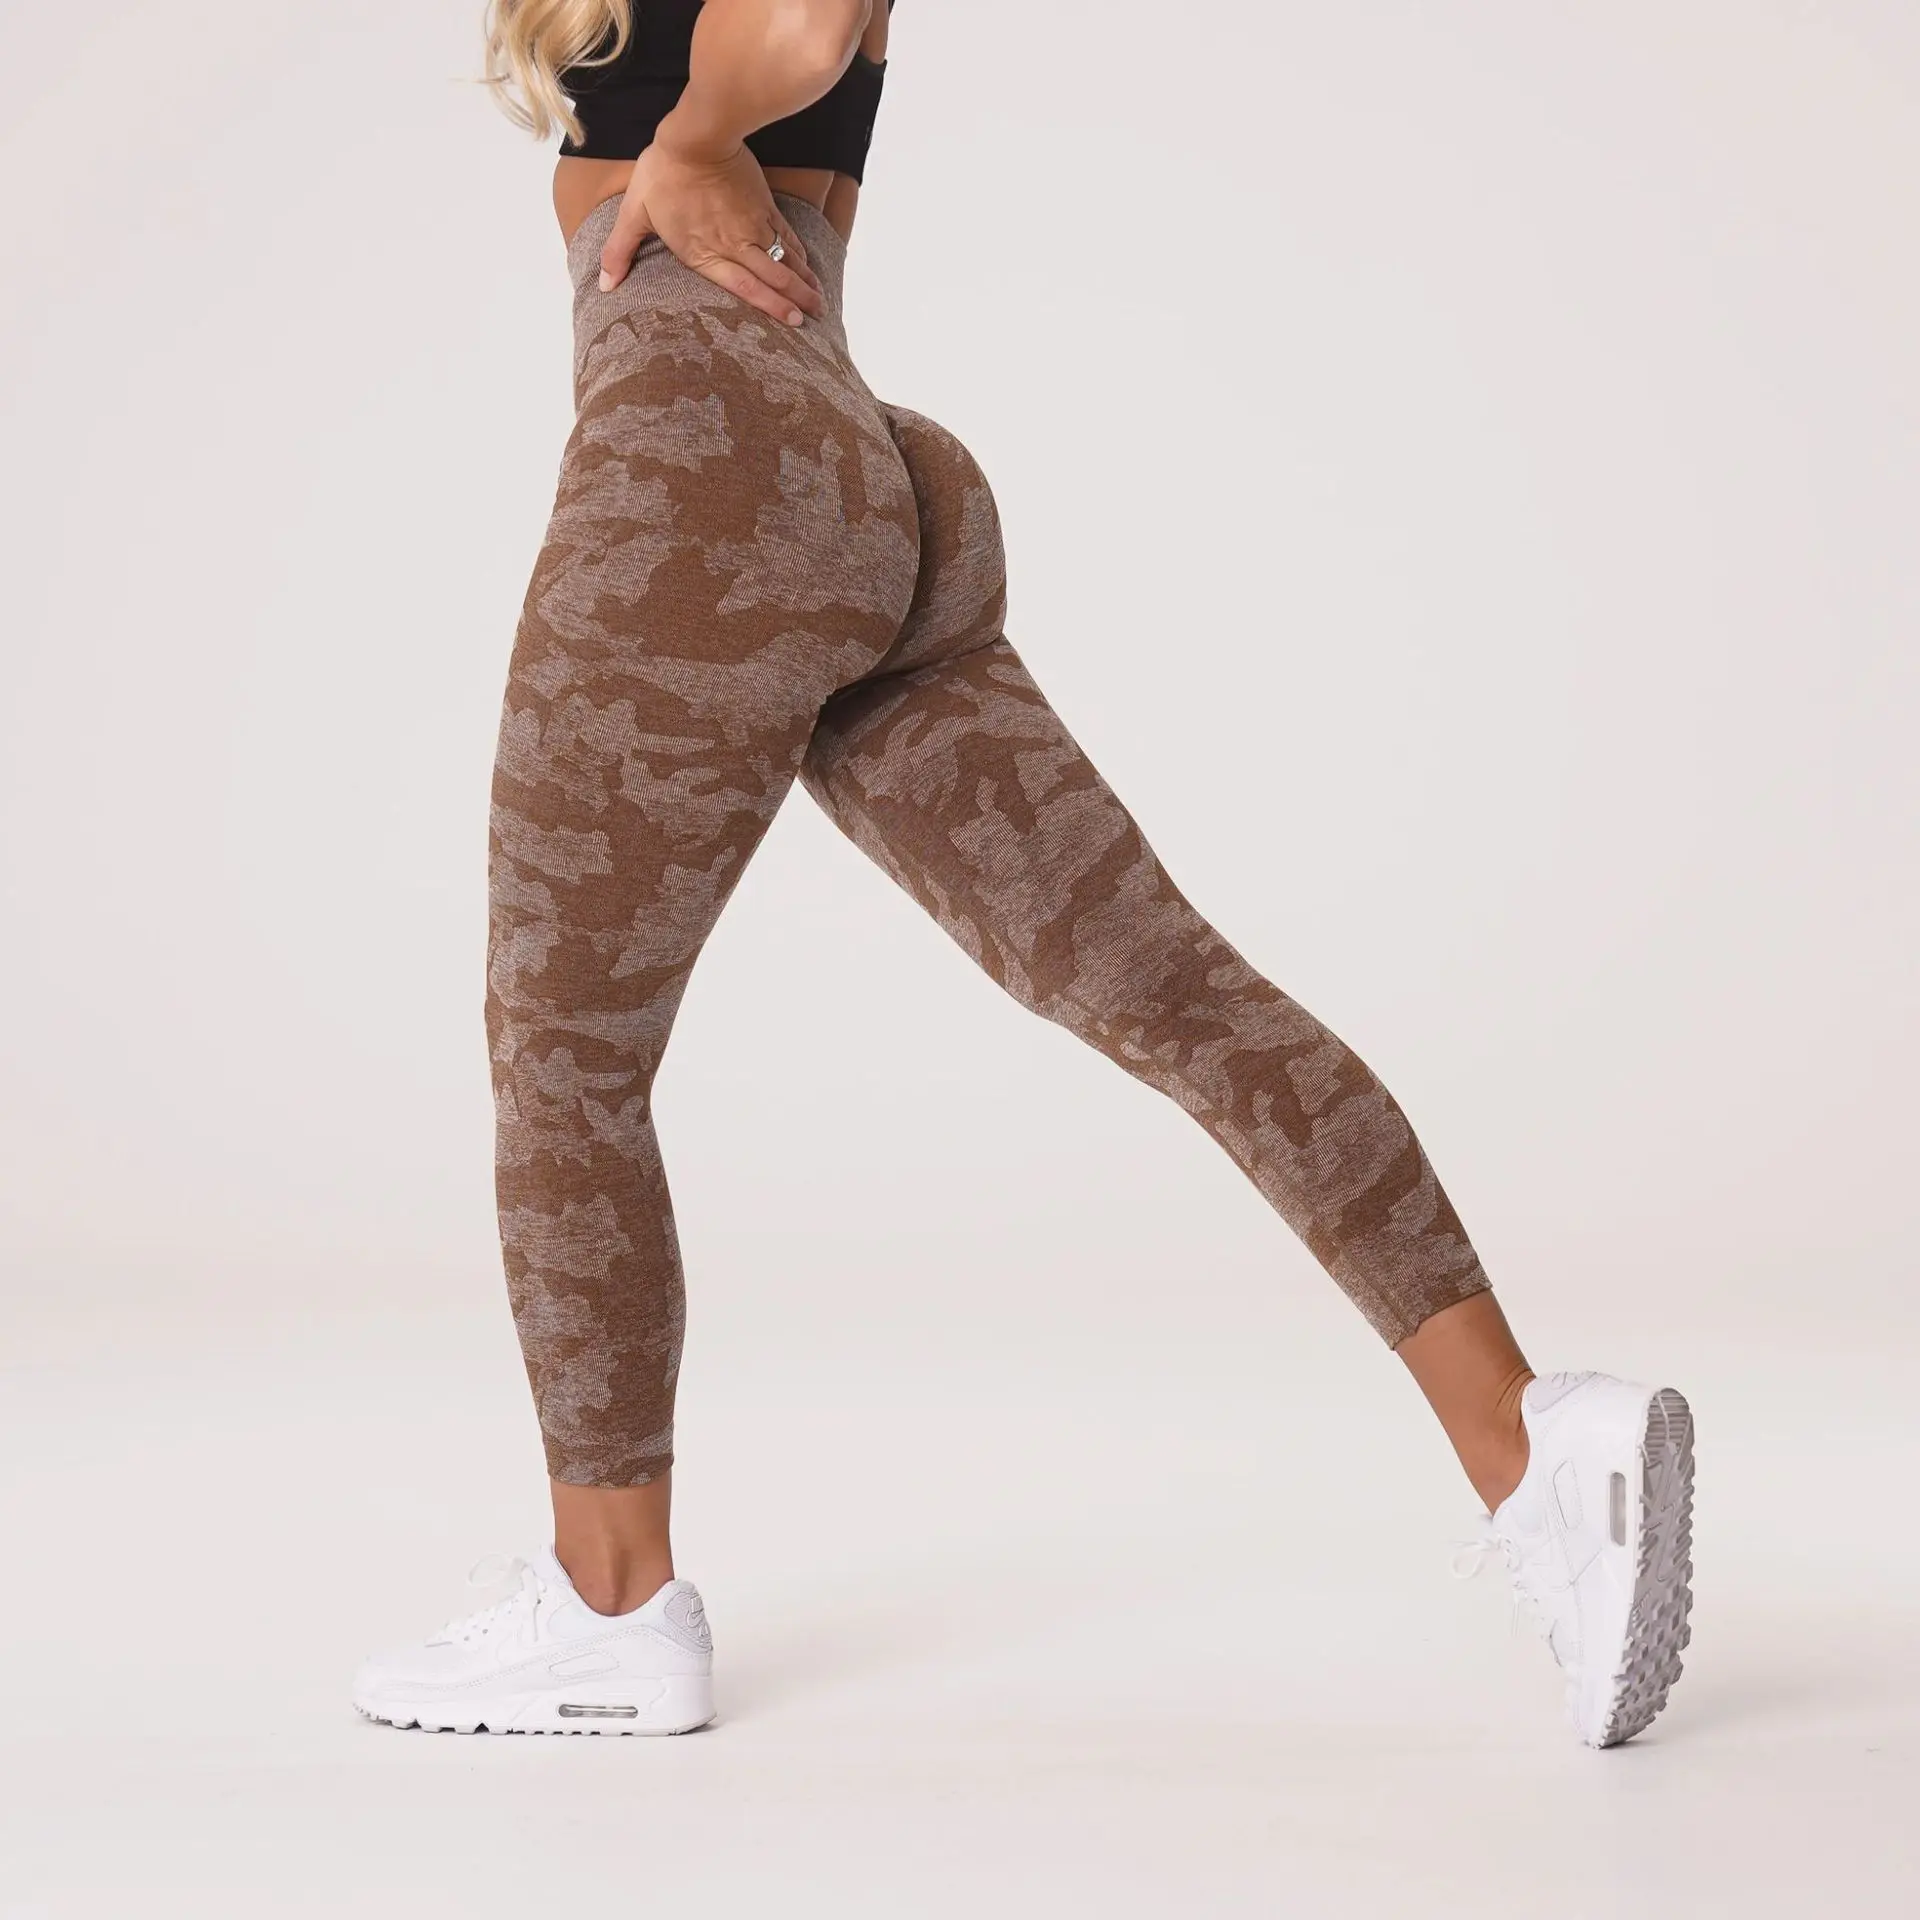 Women Scrunch Butt Lifting Leggings Seamless High Waisted Workout Yoga  Pants